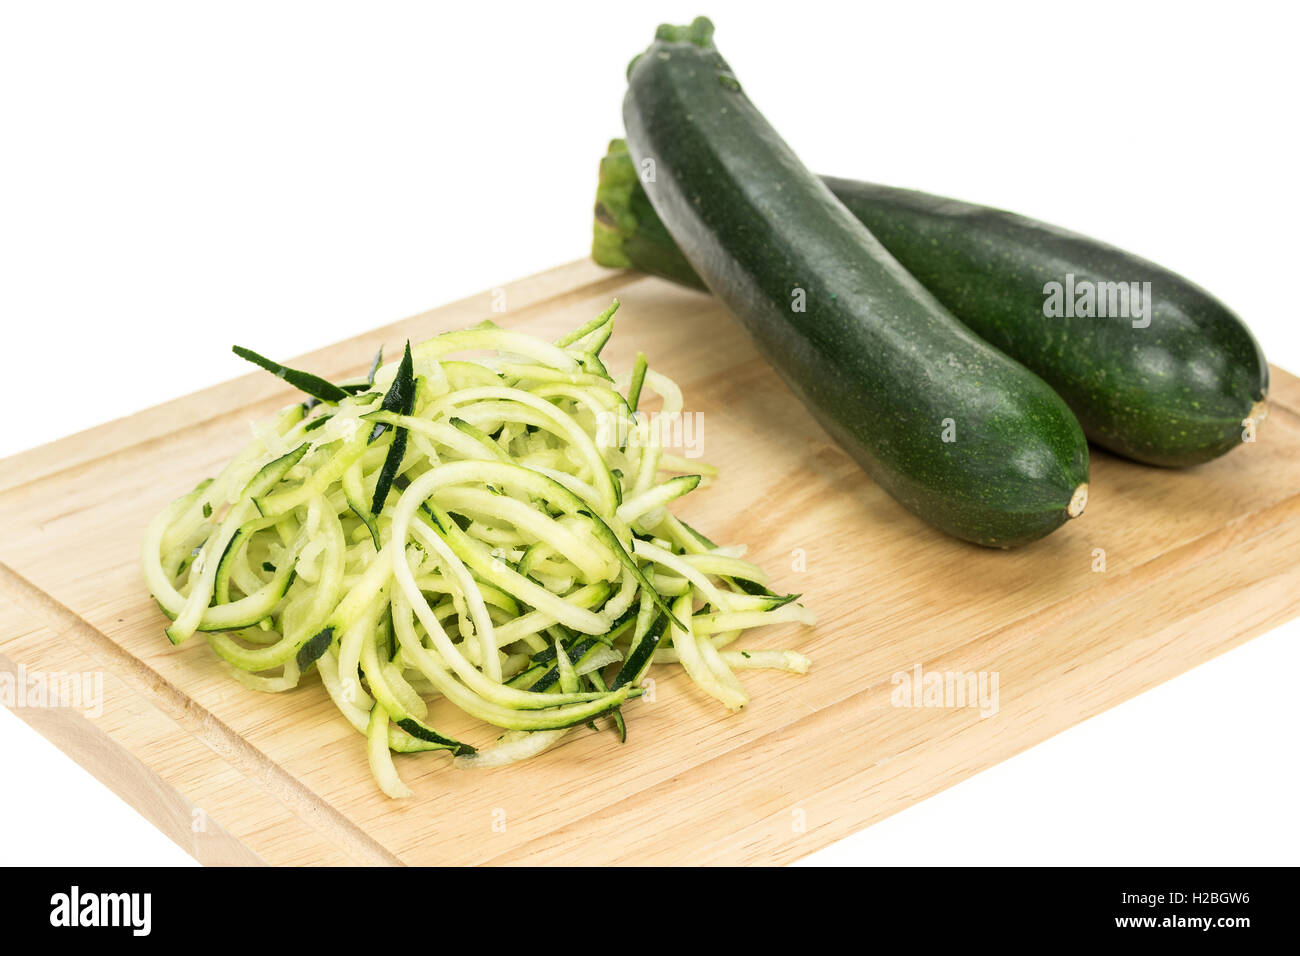 Di zucchine grattugiate pasta o spaghetti con alcuni intera di zucchine. Foto Stock